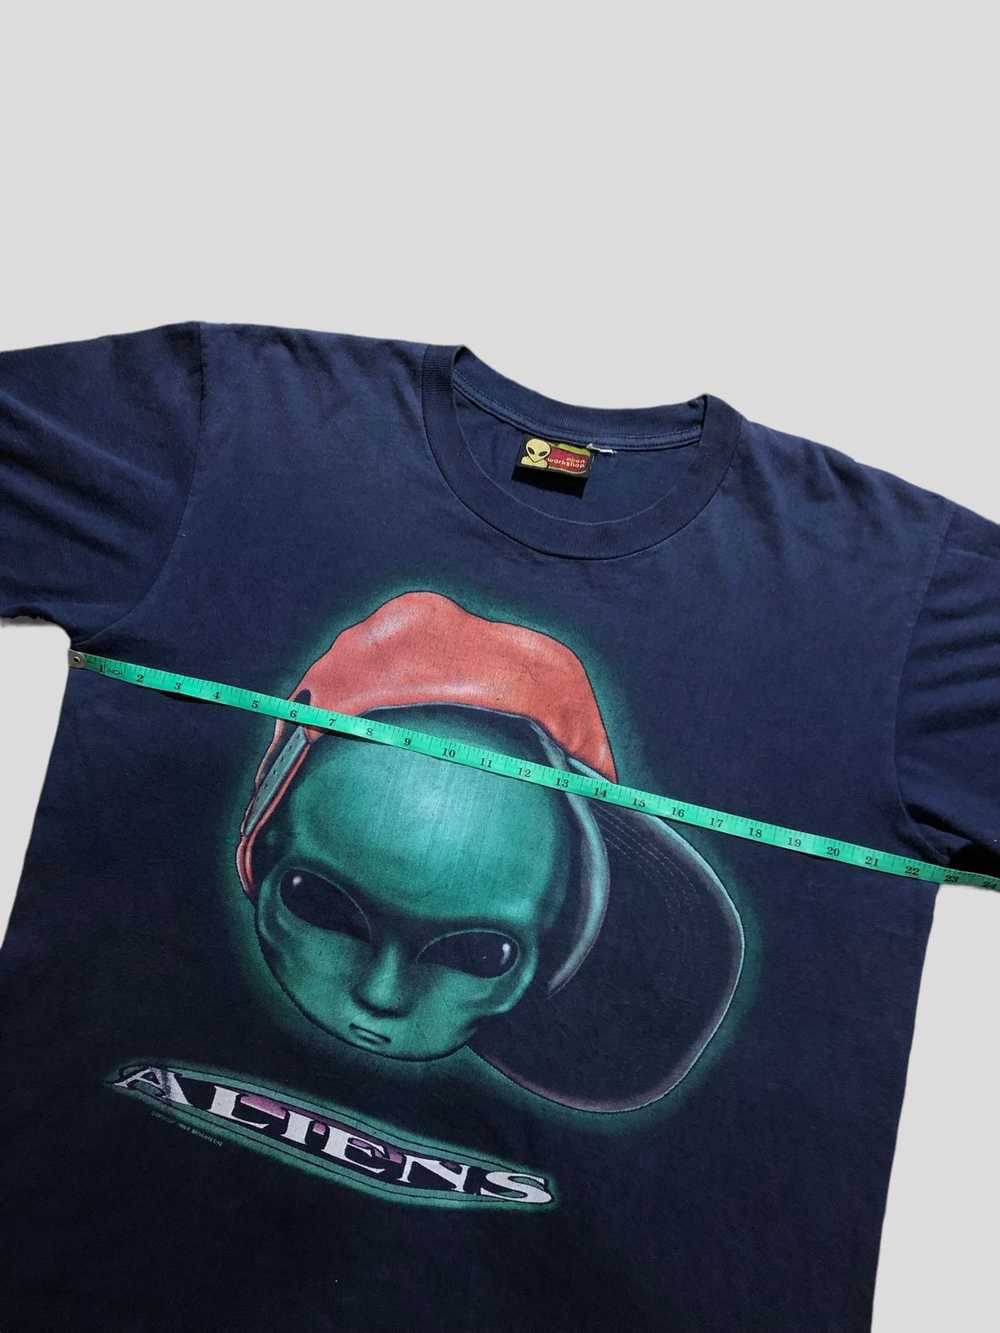 Vintage Alien workshop T Shirt - image 4